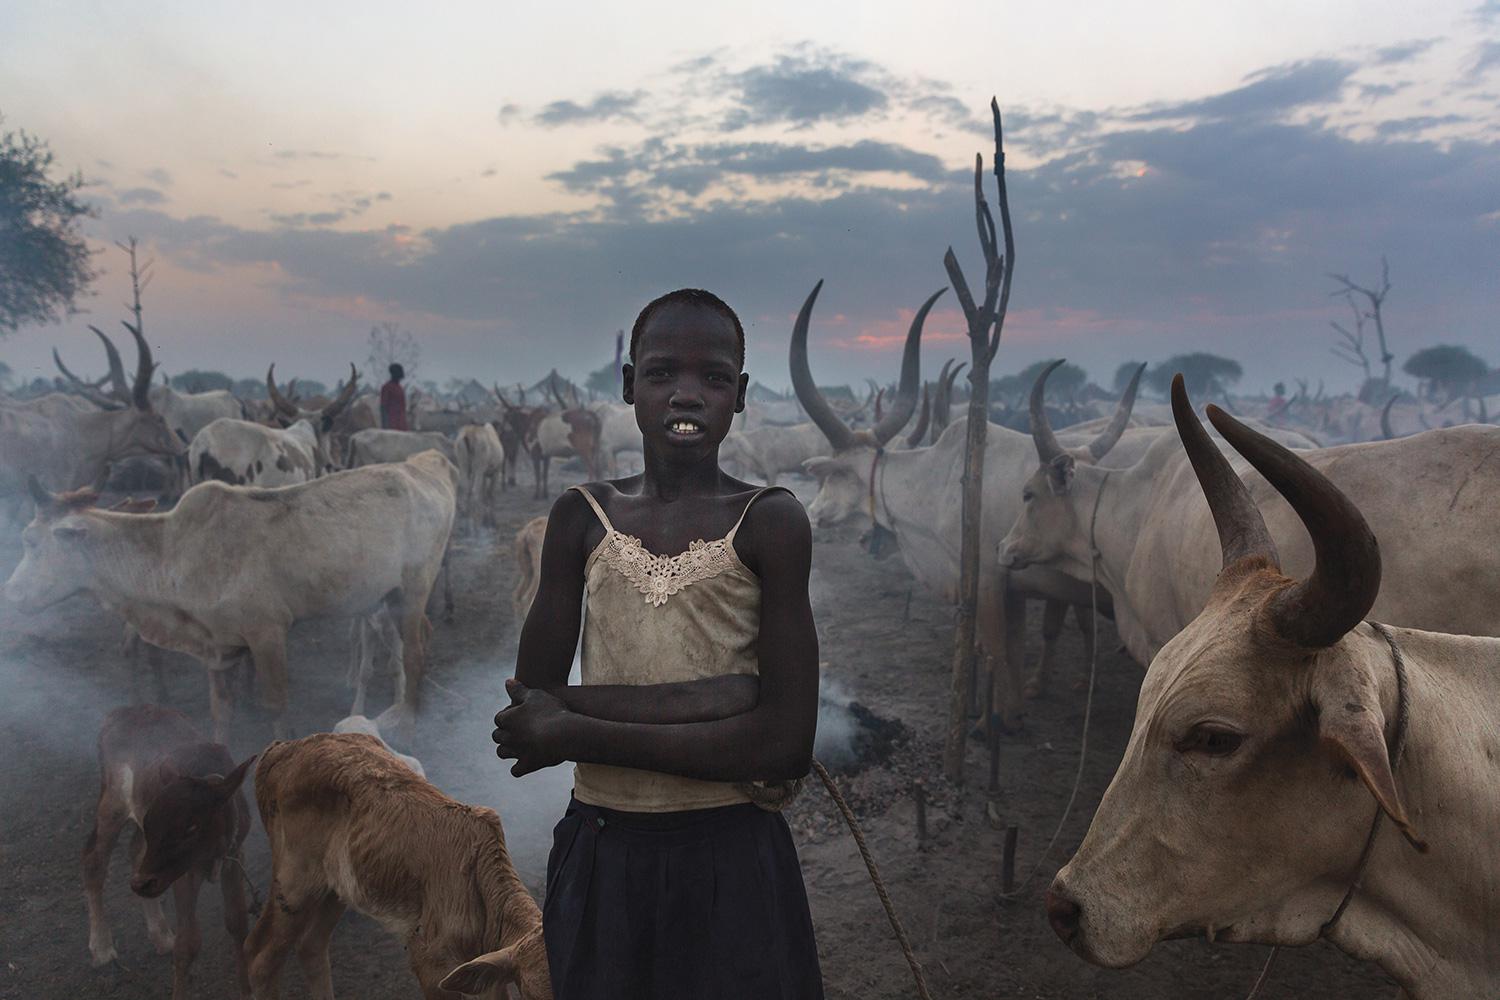 Une jeune fille sud-soudanaise, non mariée, photographiée en février 2013 devant un troupeau dans un champ près de Bor, la capitale de l'État de Jonglei.